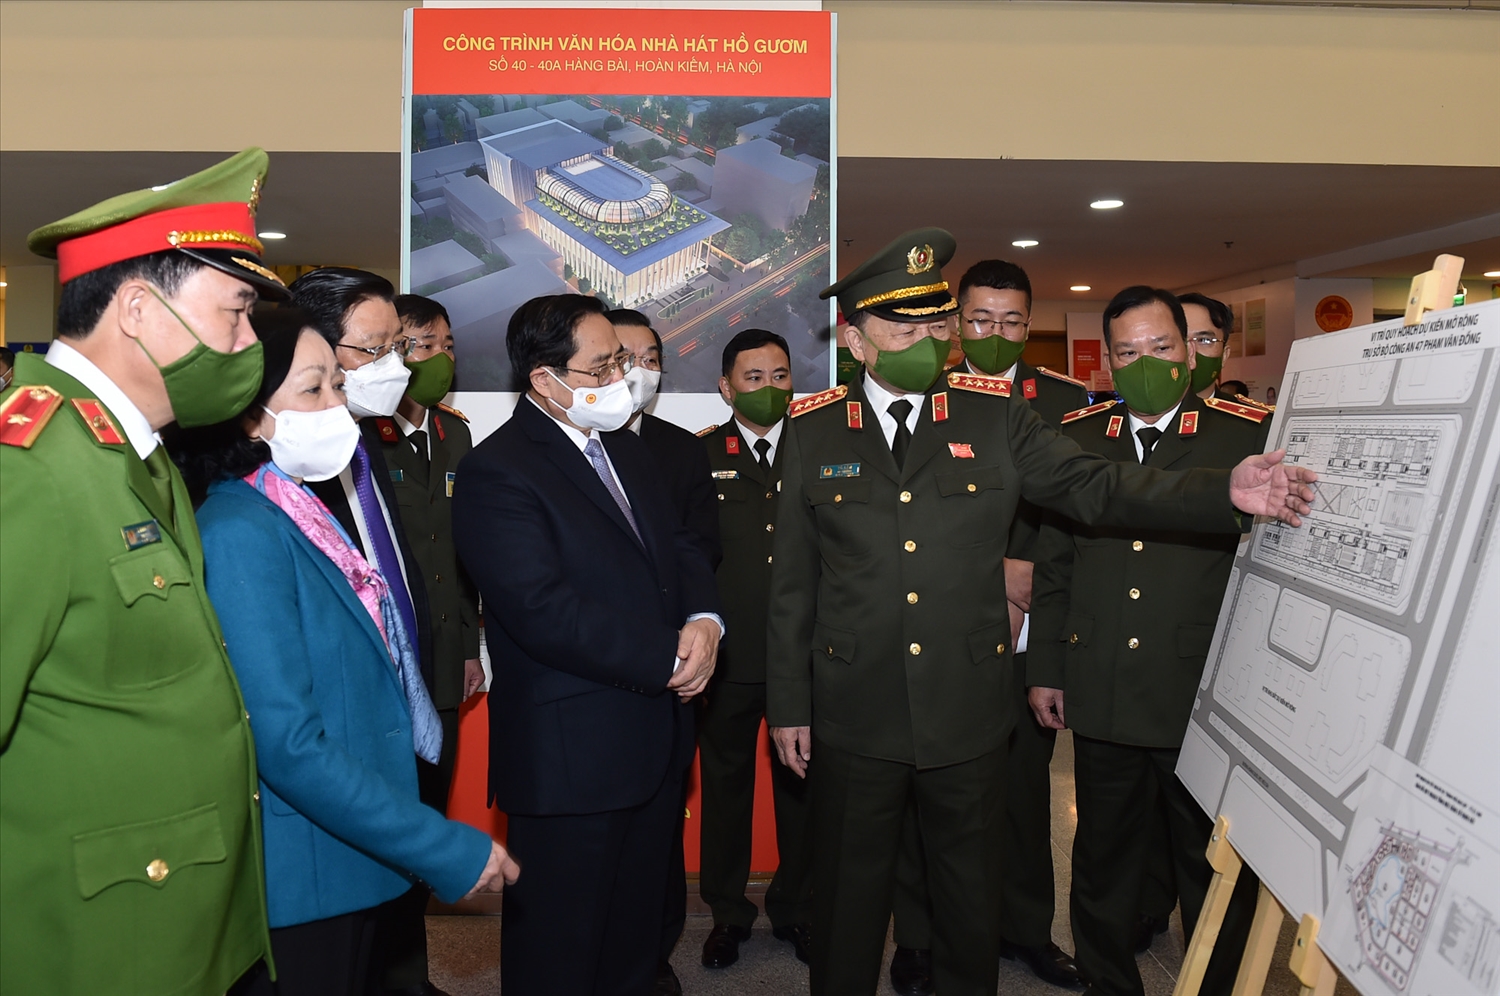 Thủ tướng Phạm Minh Chính và các đồng chí lãnh đạo Đảng, Nhà nước nghe Bộ trưởng Công an Tô Lâm giới thiệu về dự án công trình văn hóa Nhà hát Hồ Gươm - Ảnh: VGP/Nhật Bắc